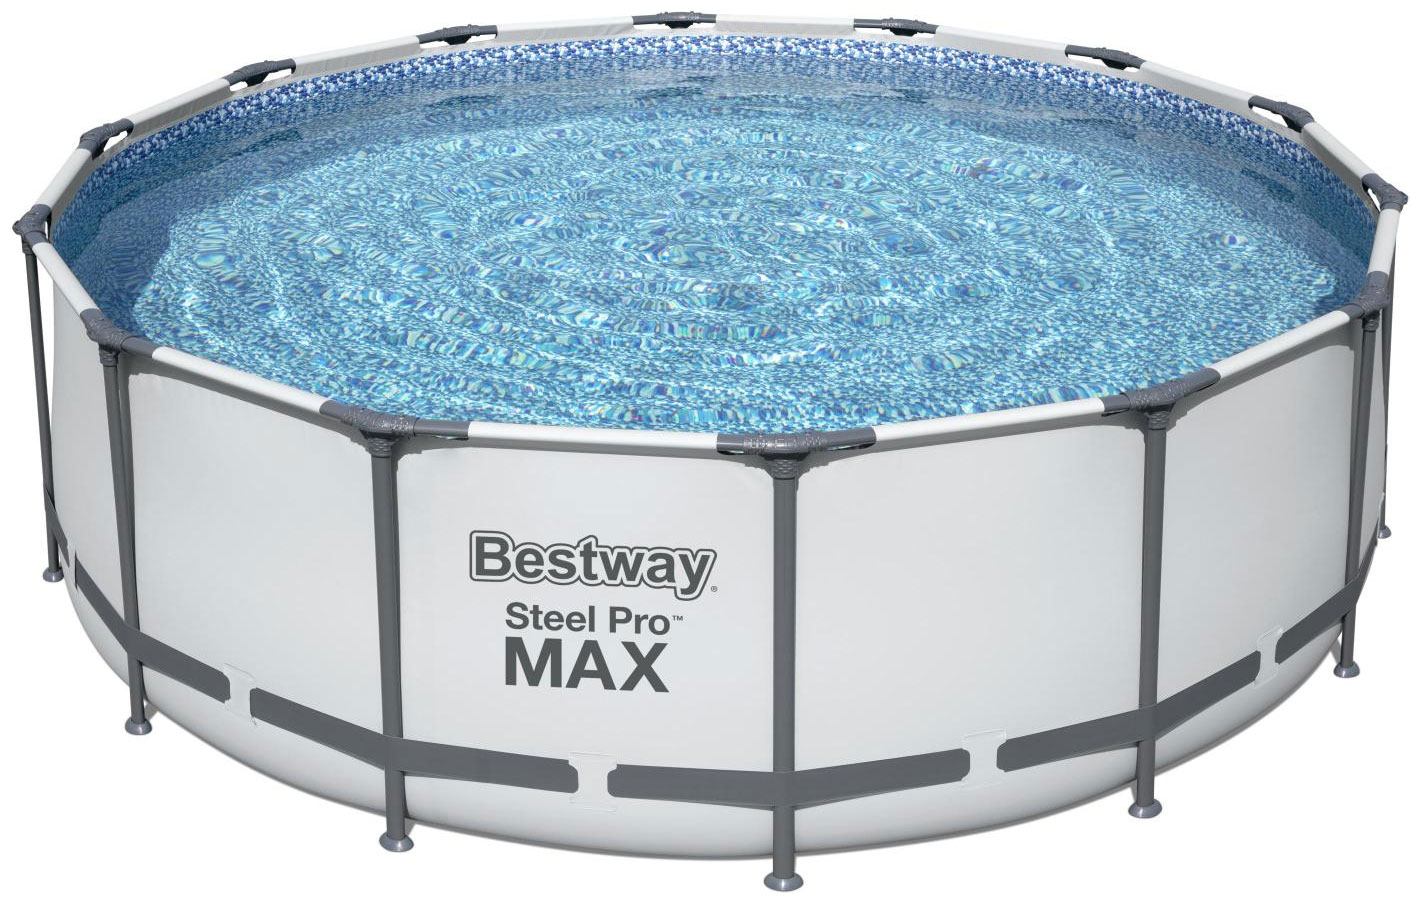 Бассейн BestWay 5612X BW Steel Pro Max 427х122 см, 15232 л бассейн bestway steel pro max 427х122cm 5612x